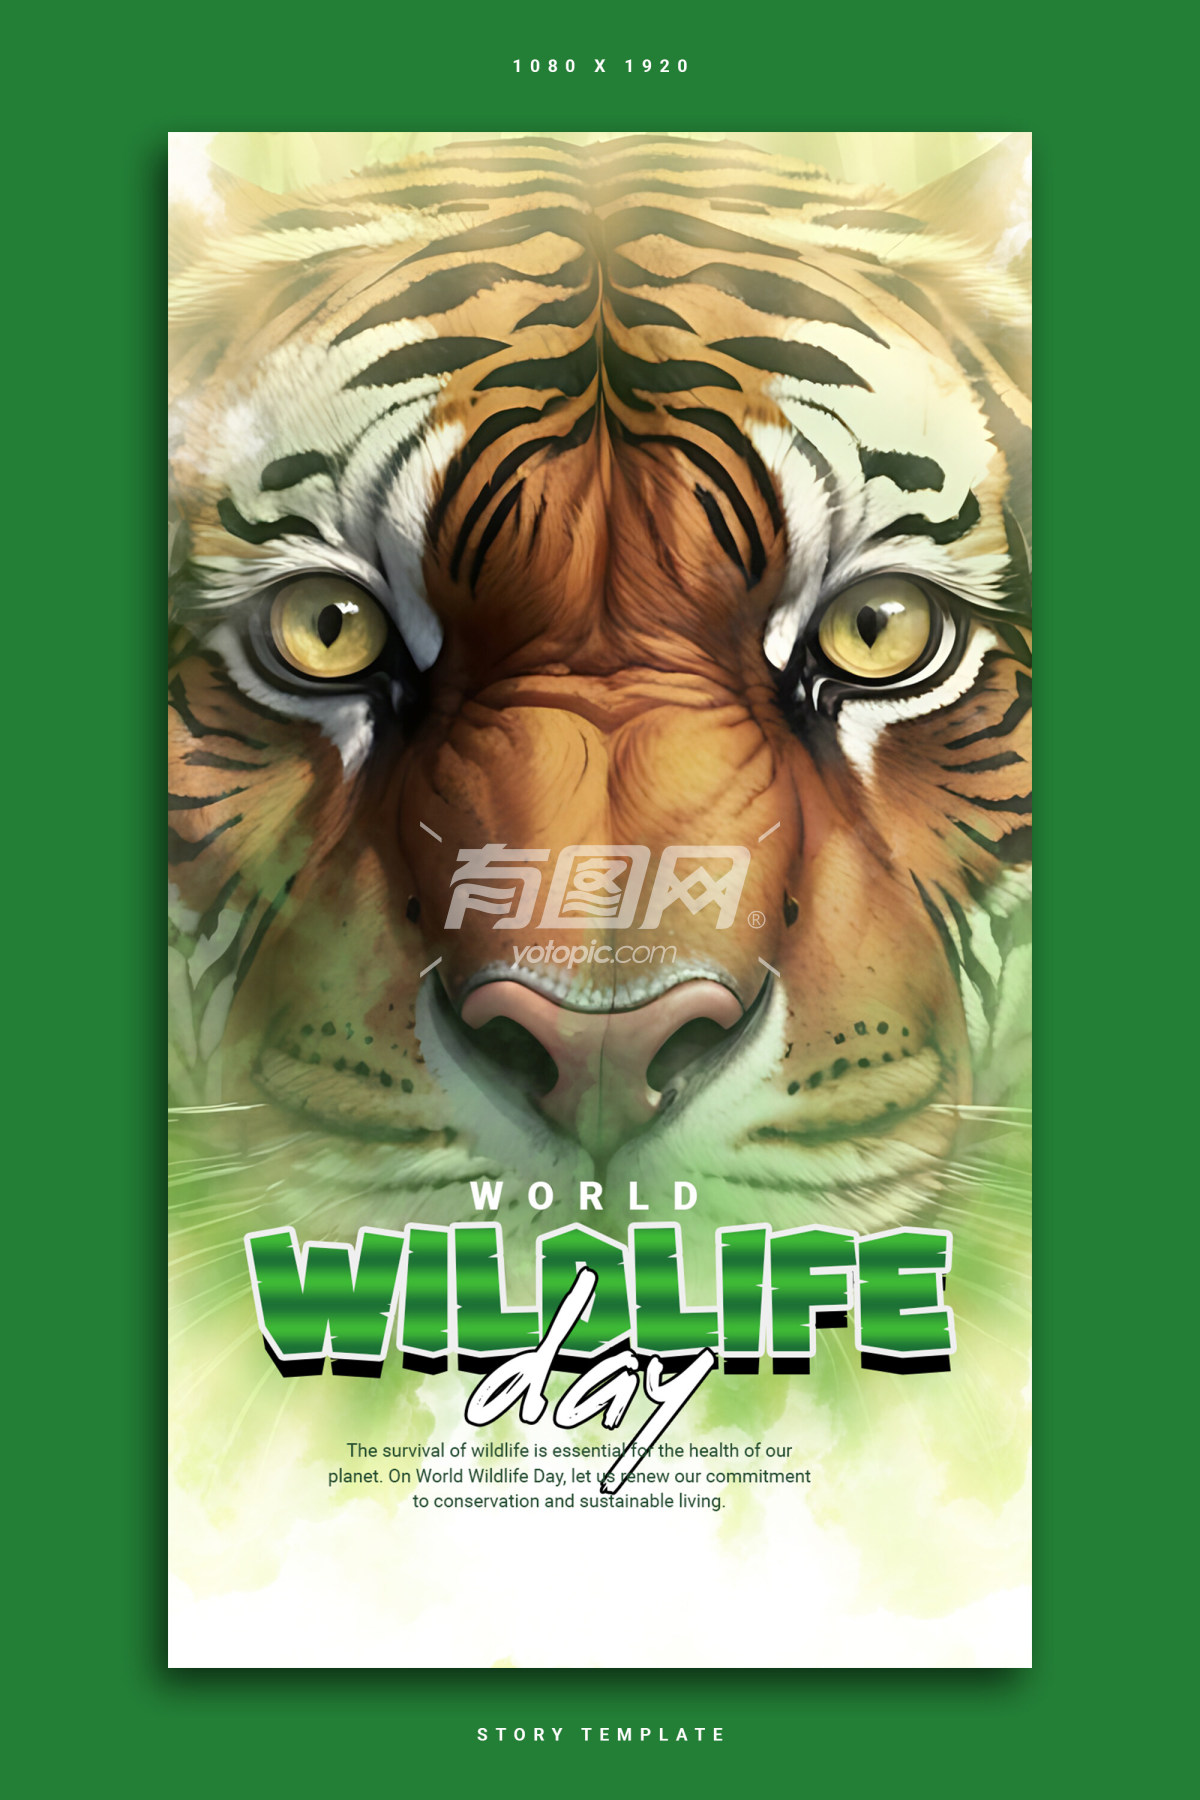 宣传野生动物保护的海报